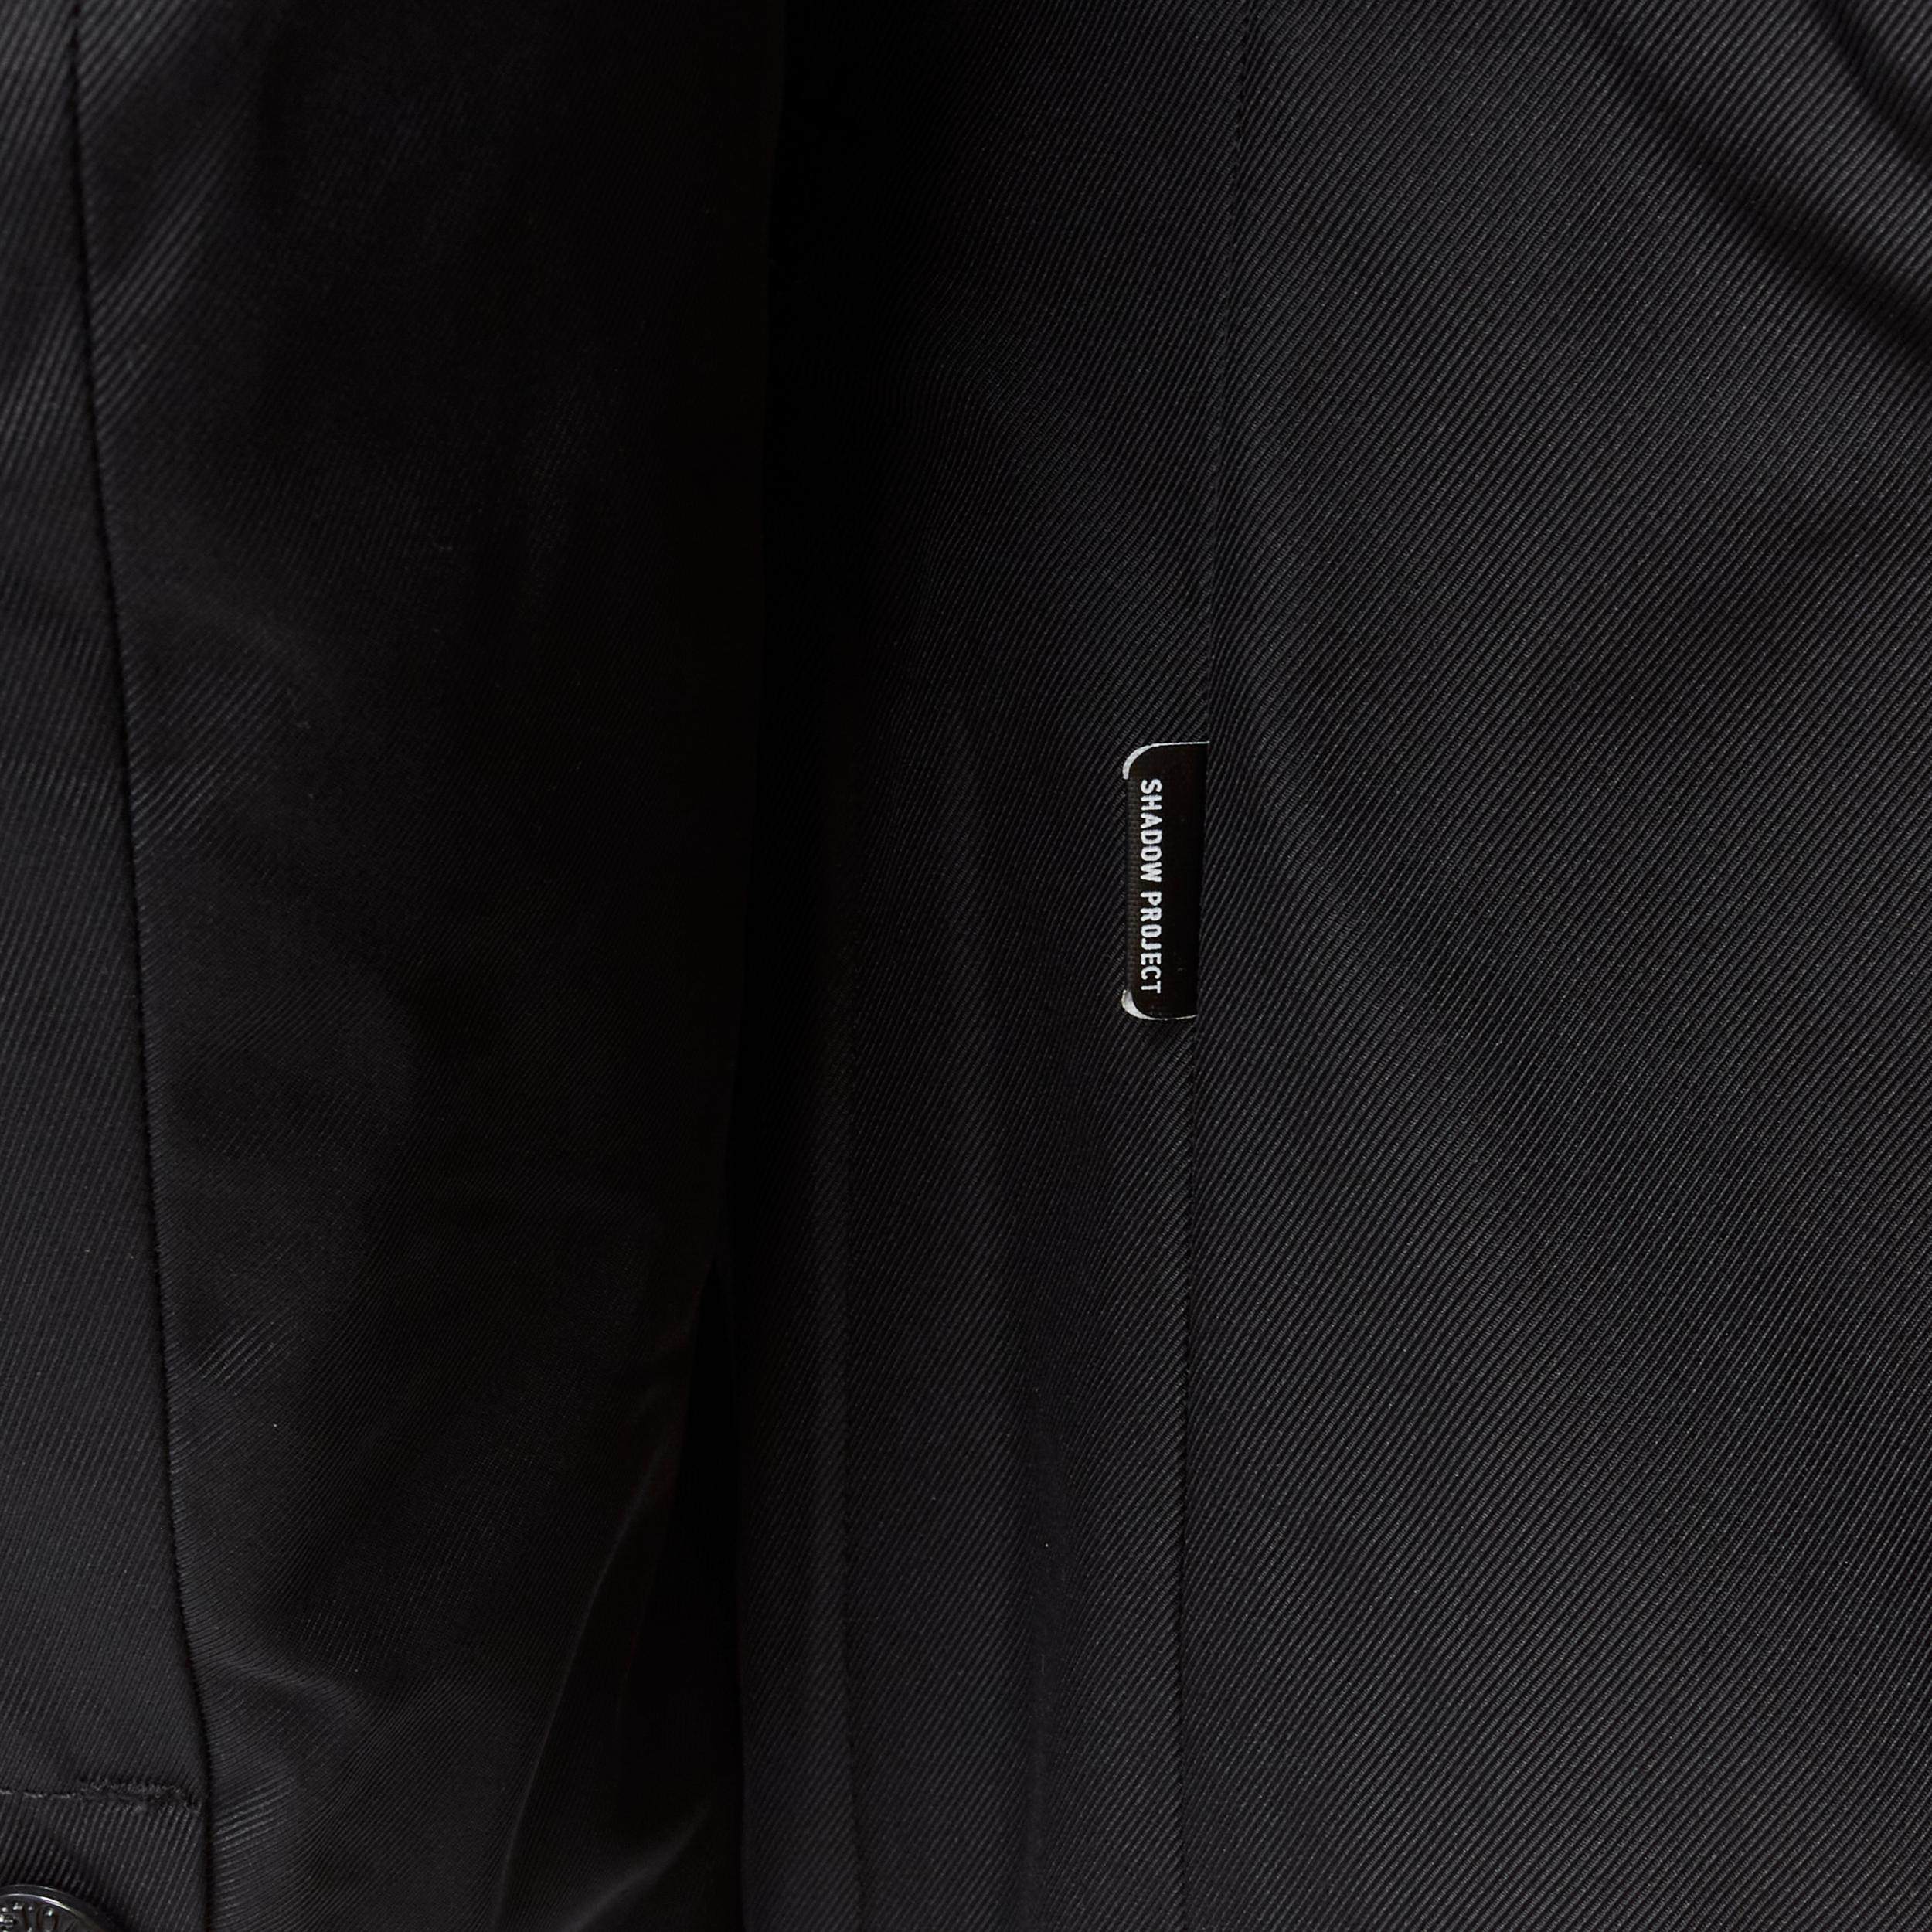 new STONE ISLAND Shadow Project black technical nylon logo patch blazer jacket S 2